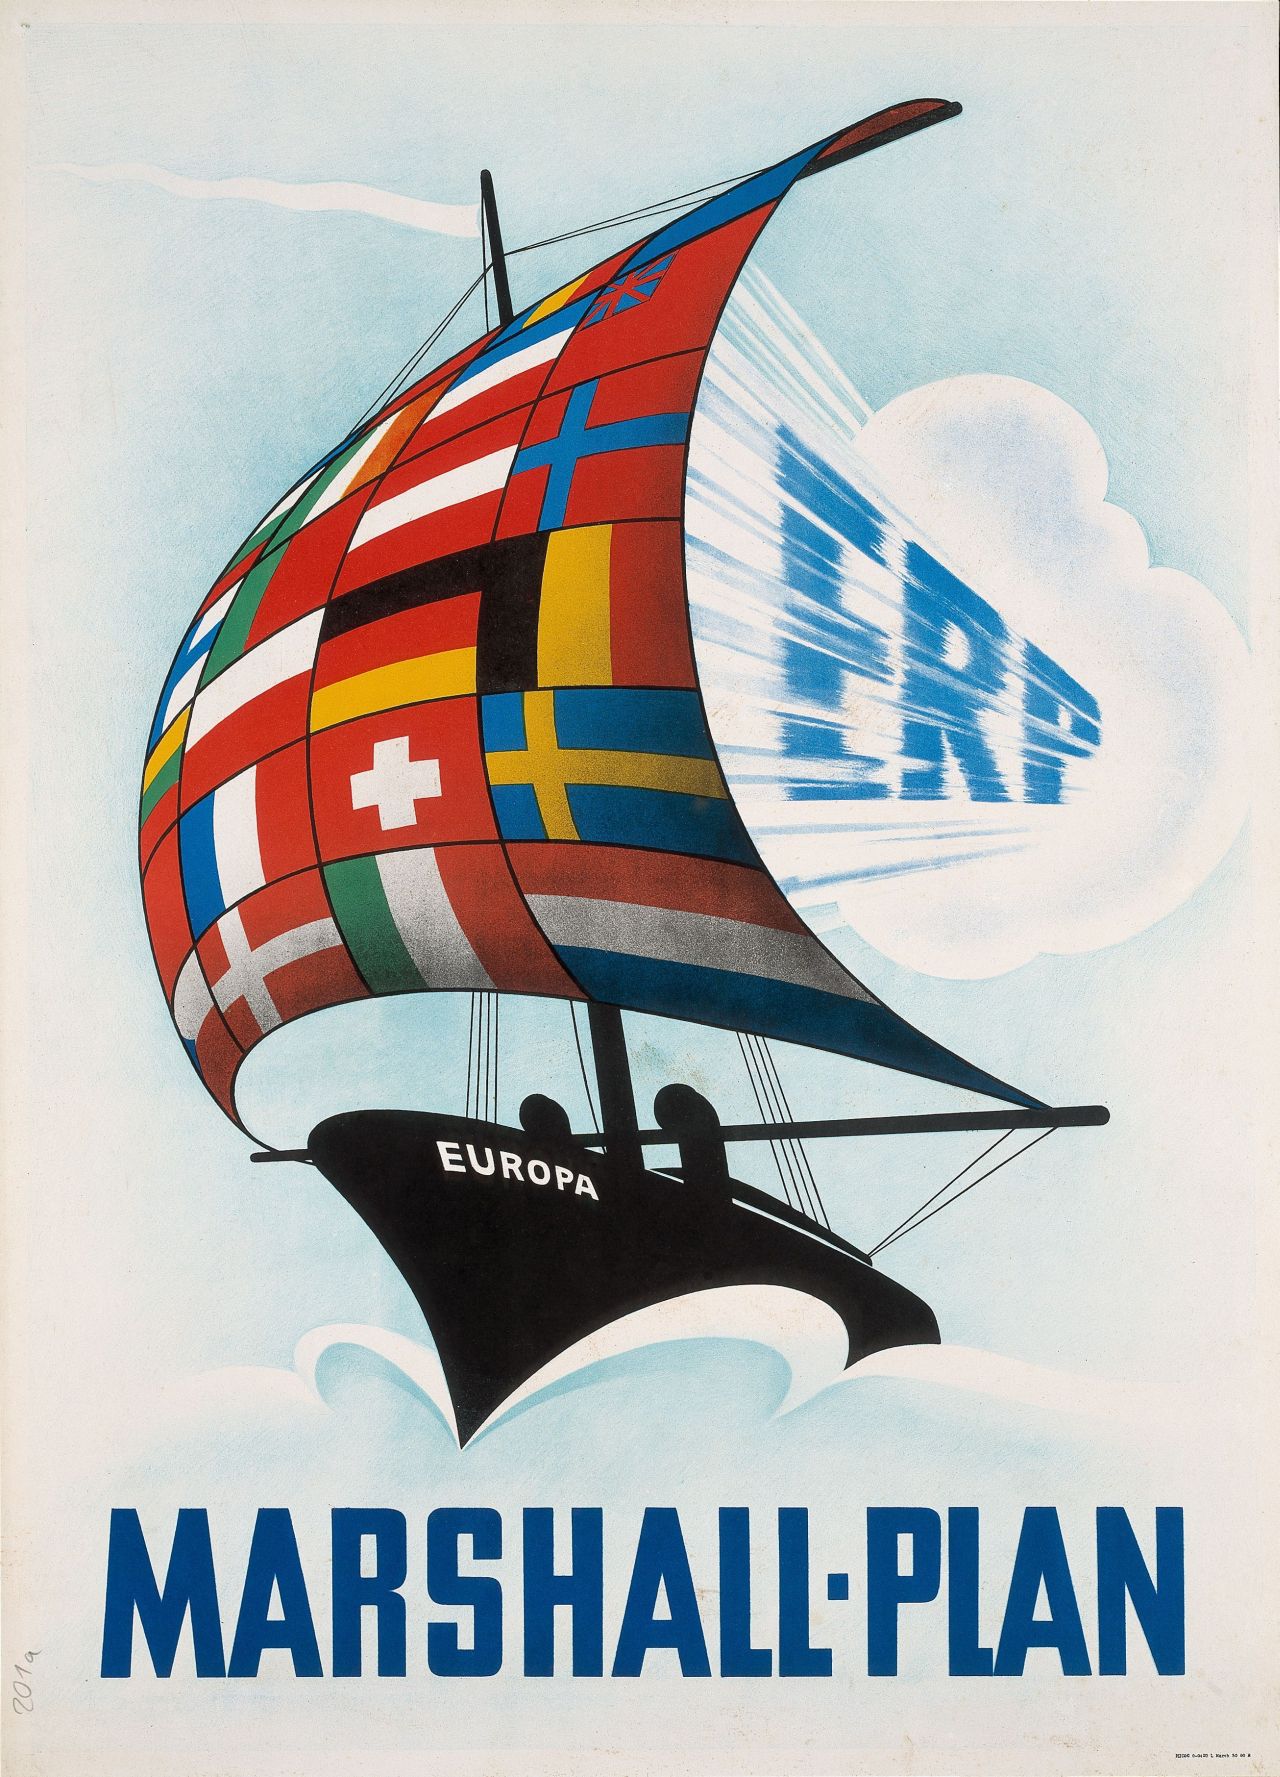 Segelschiff, namens Europa, auf dessen Segel europäische Flaggen abgebildet sind. Der hineinblasende Wind trägt den Schriftzug 'ERP'. Unter Zeichnung Schriftzug 'Marshall-Plan'.